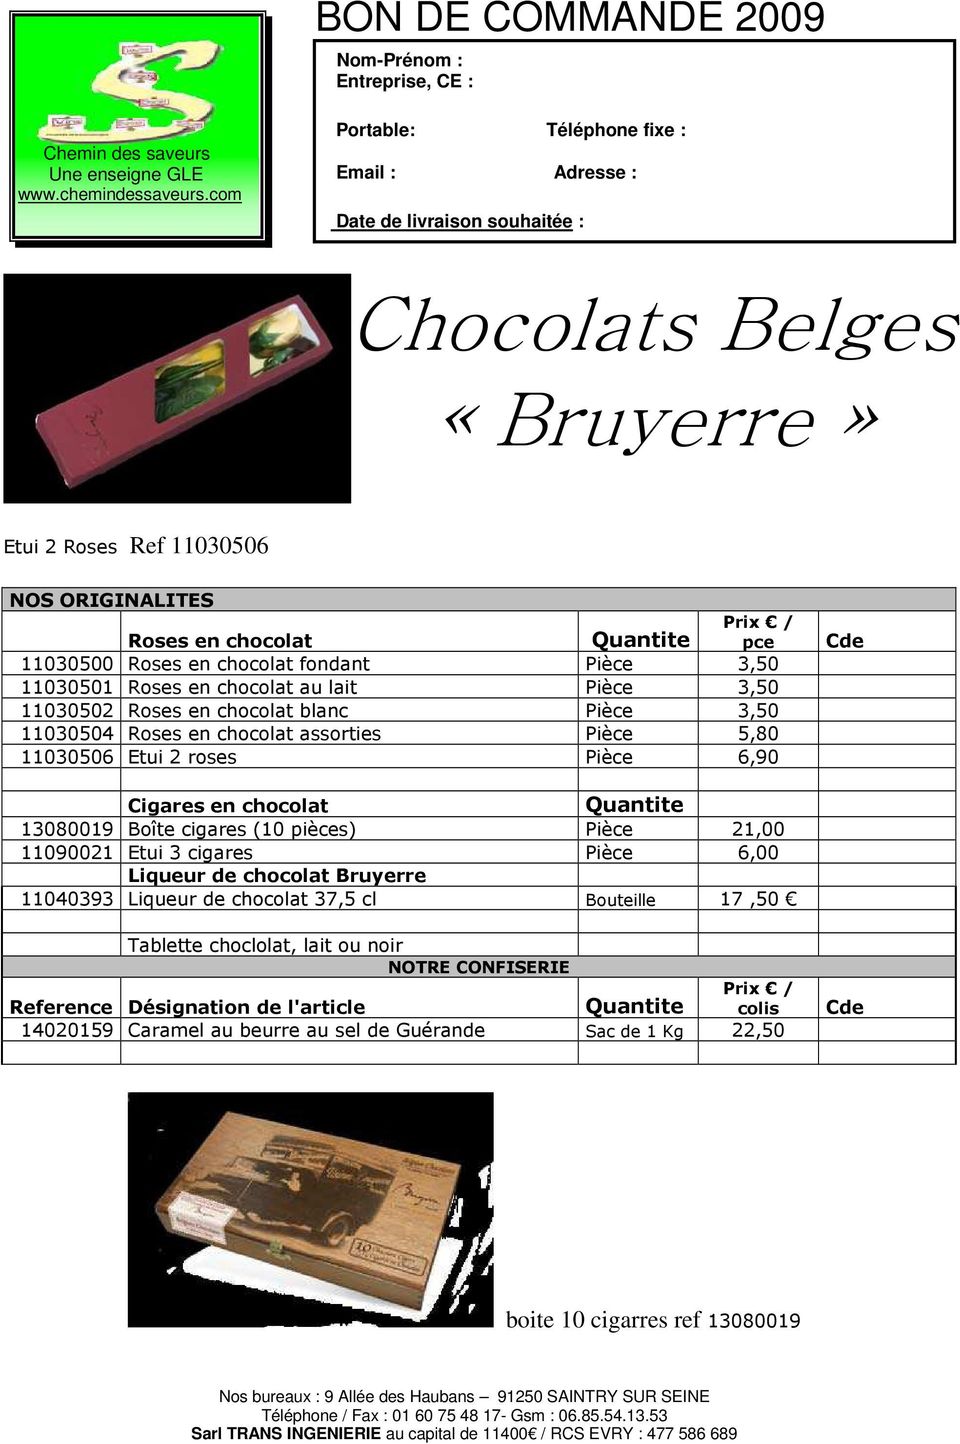 cigares (10 ) Pièce 11090021 Etui 3 cigares Pièce 6,00 Liqueur de chocolat Bruyerre 11040393 Liqueur de chocolat 37,5 cl Bouteille 17,50 Tablette choclolat,